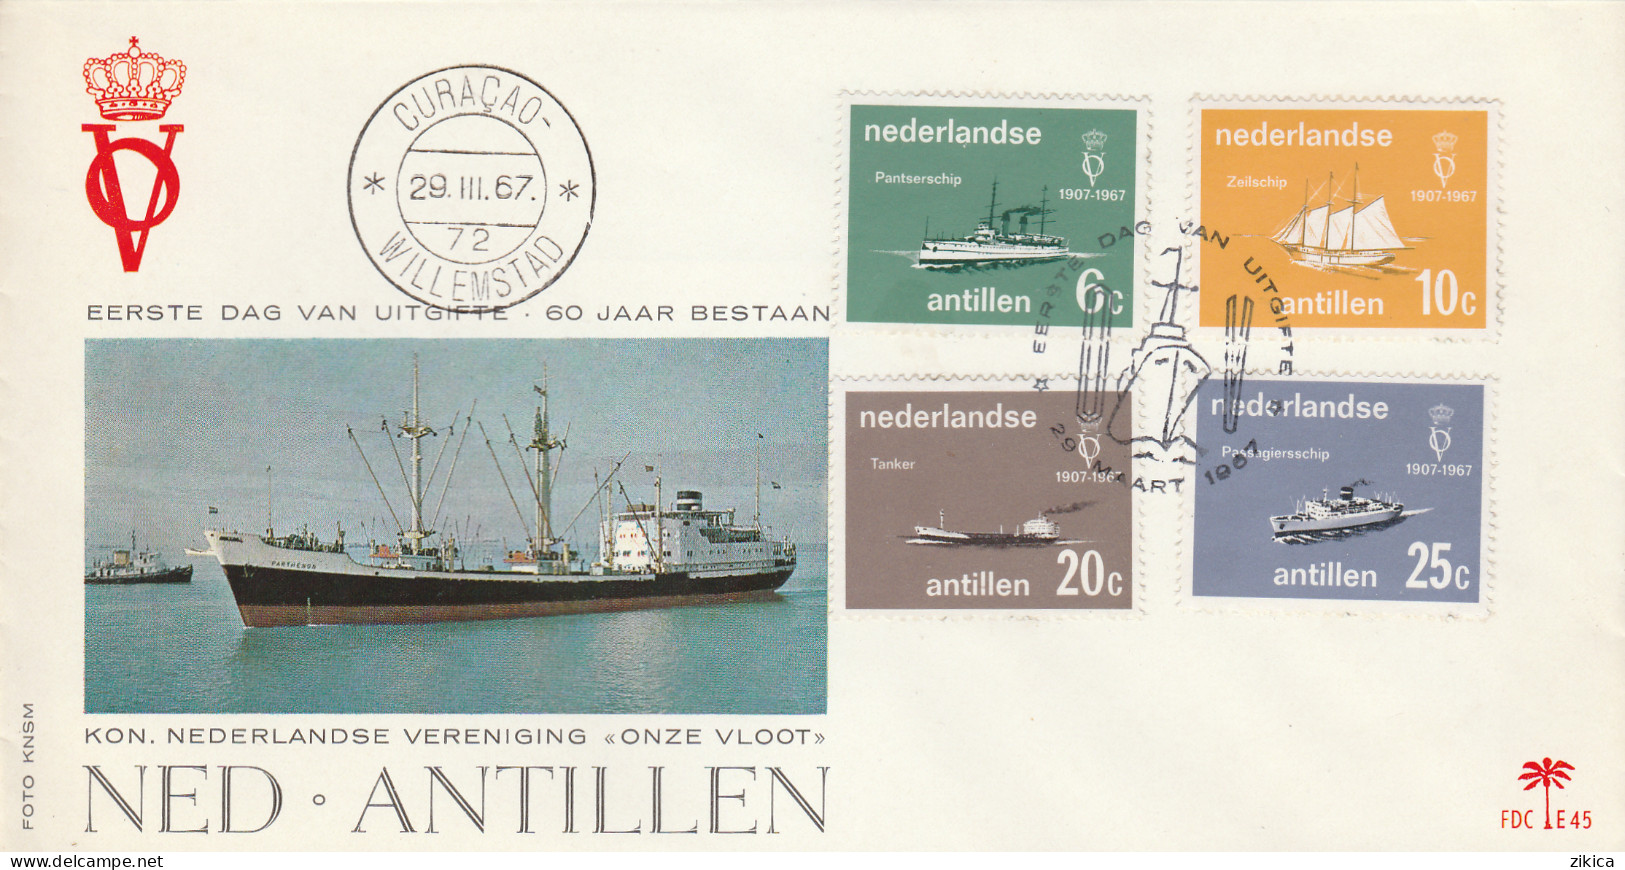 Netherlands - Curacao, Netherlands Antilles Cover 1967,motive Ships - Niederländische Antillen, Curaçao, Aruba